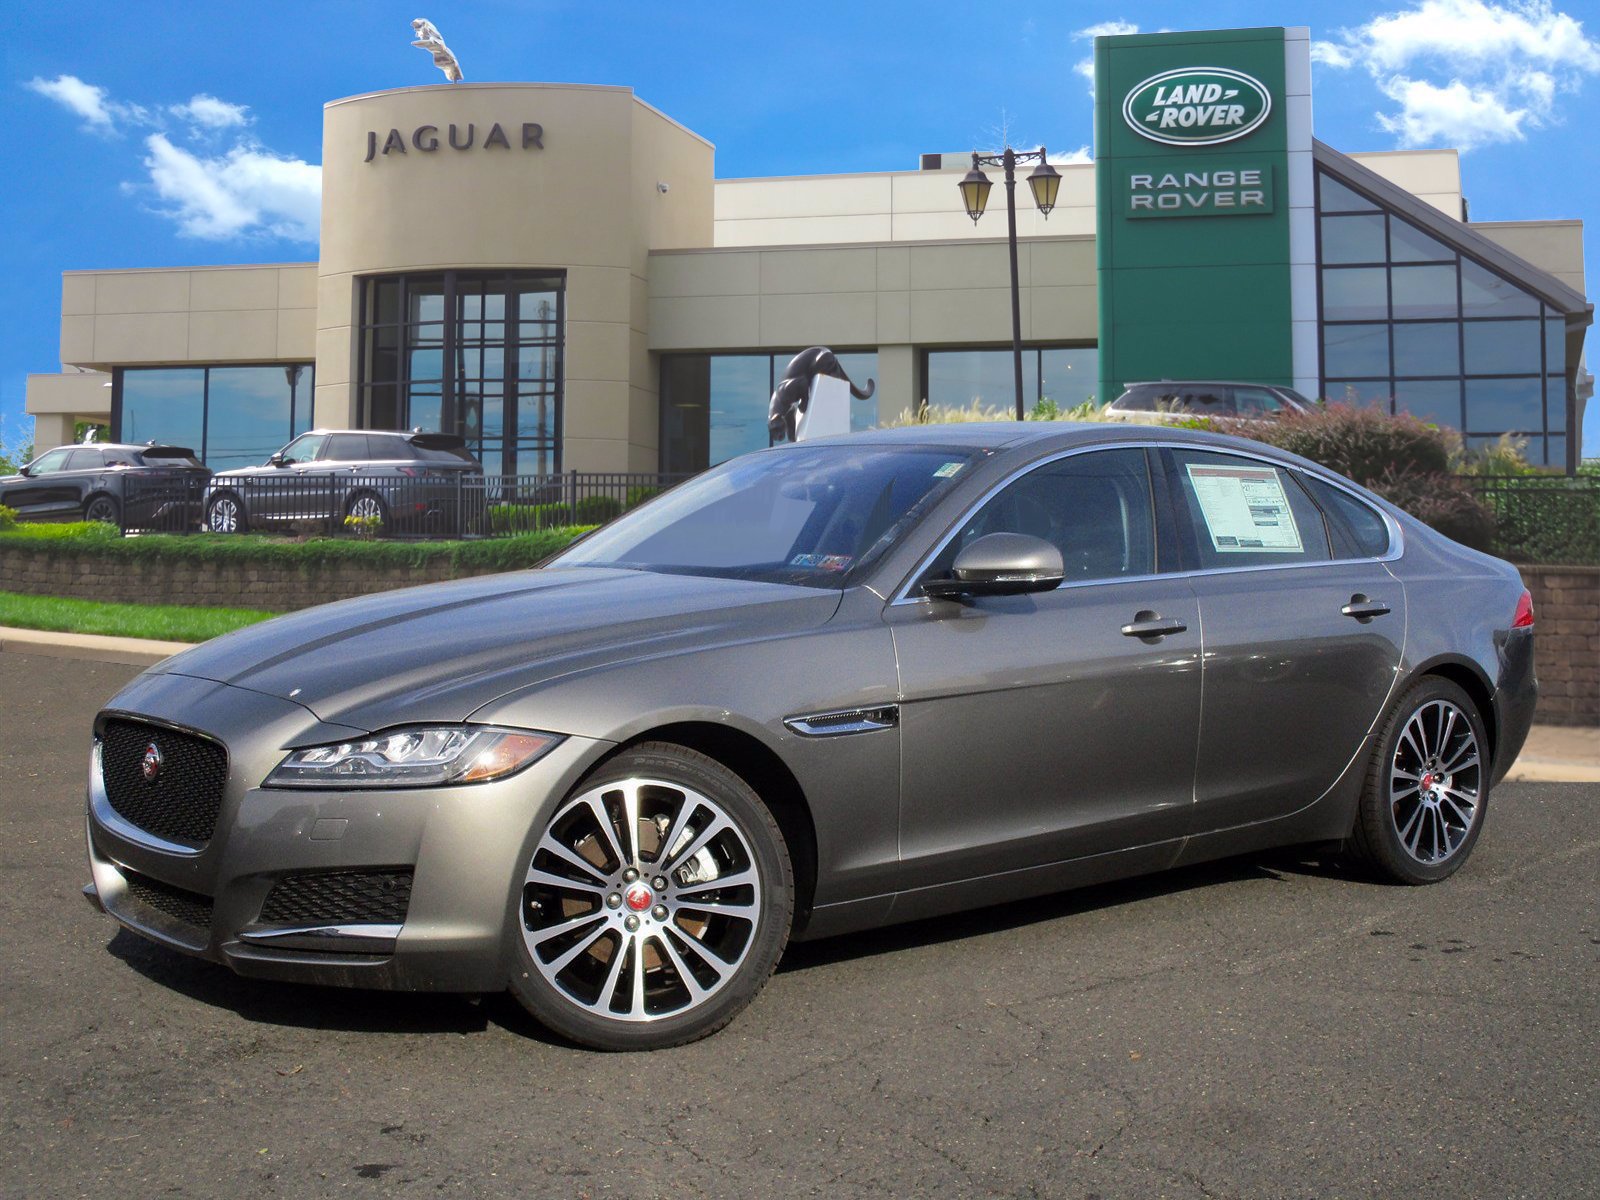 Luxury Auto Dealer In Pennsylvania Jaguar Dealer Near Me Pa Nj